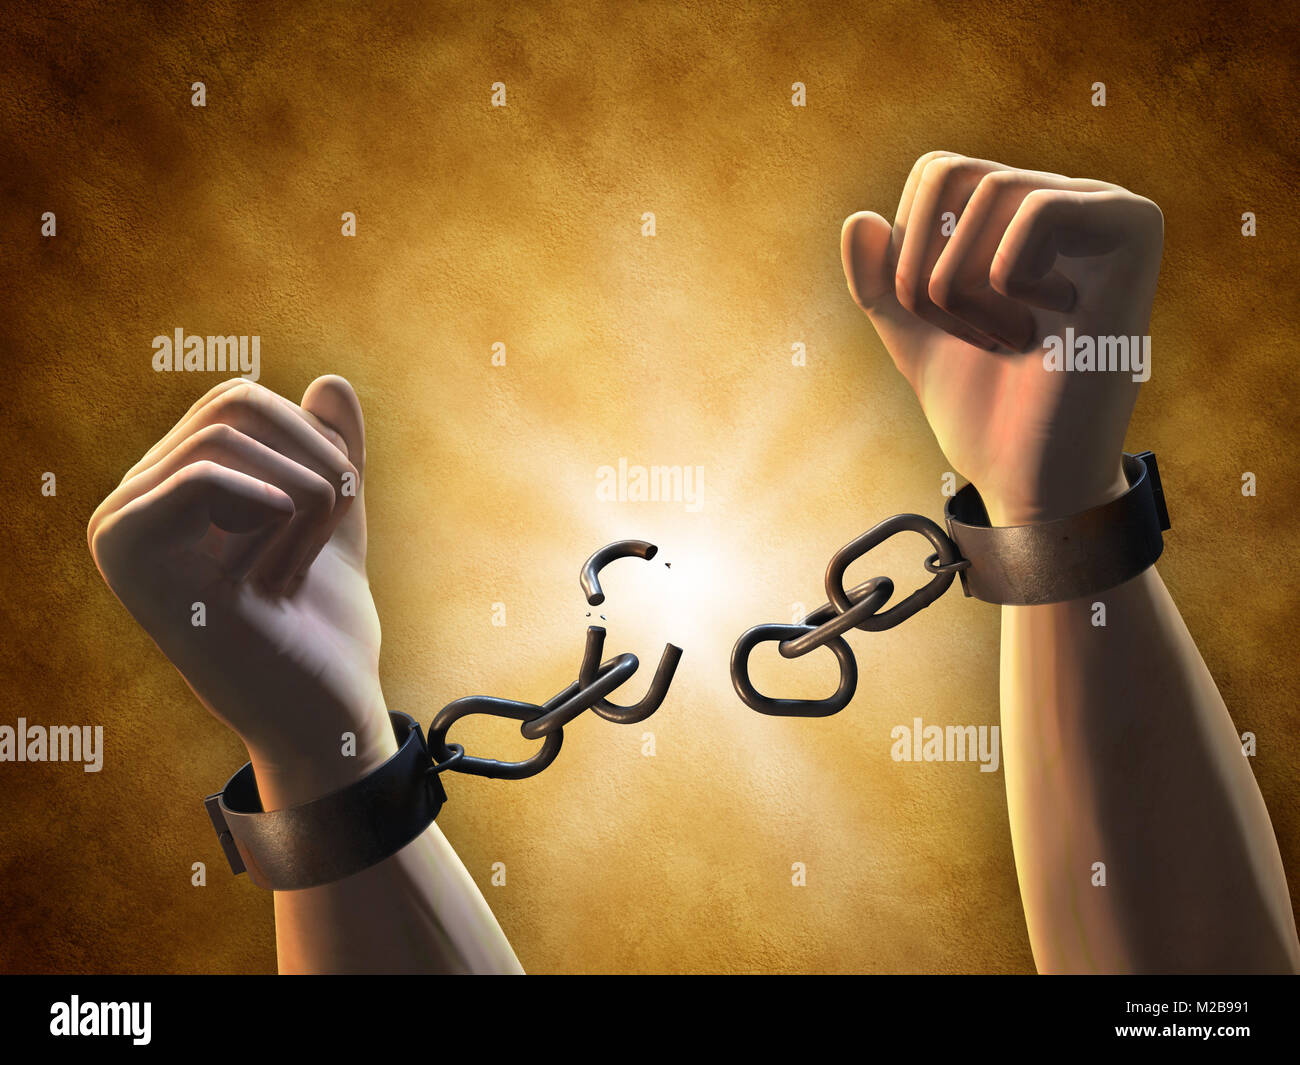 La récupération de la liberté : un homme briser une chaîne. Illustration numérique. Banque D'Images